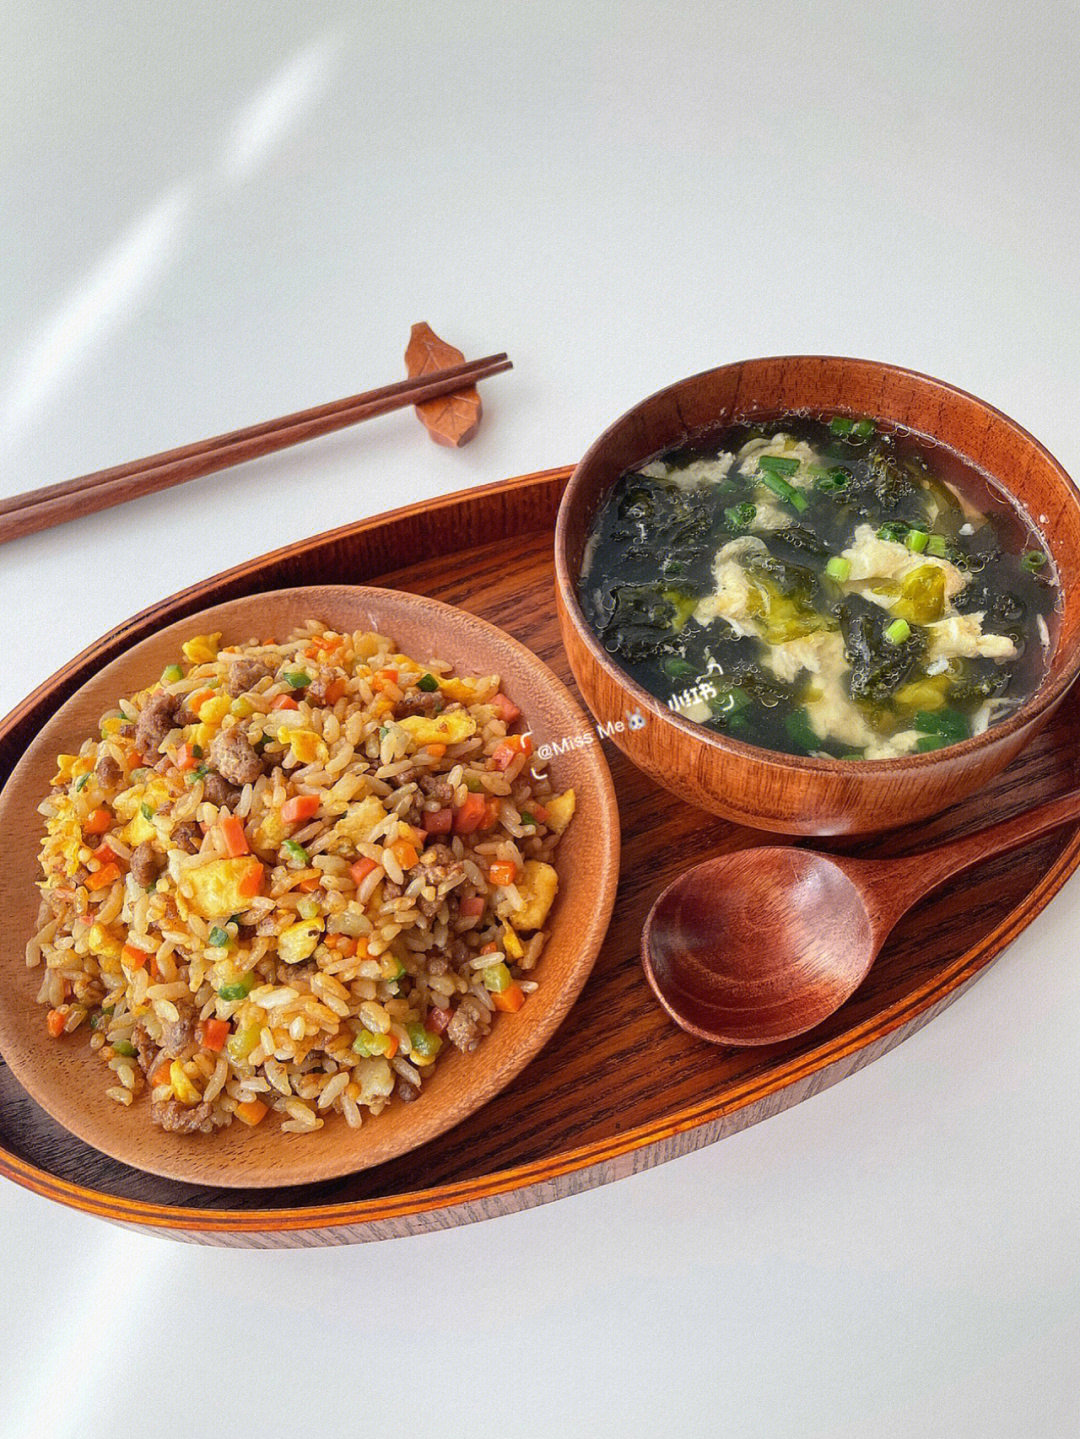 炒饭做法:16615准备食材:米饭,牛肉粒,黄瓜丁,胡萝卜丁,炒鸡蛋